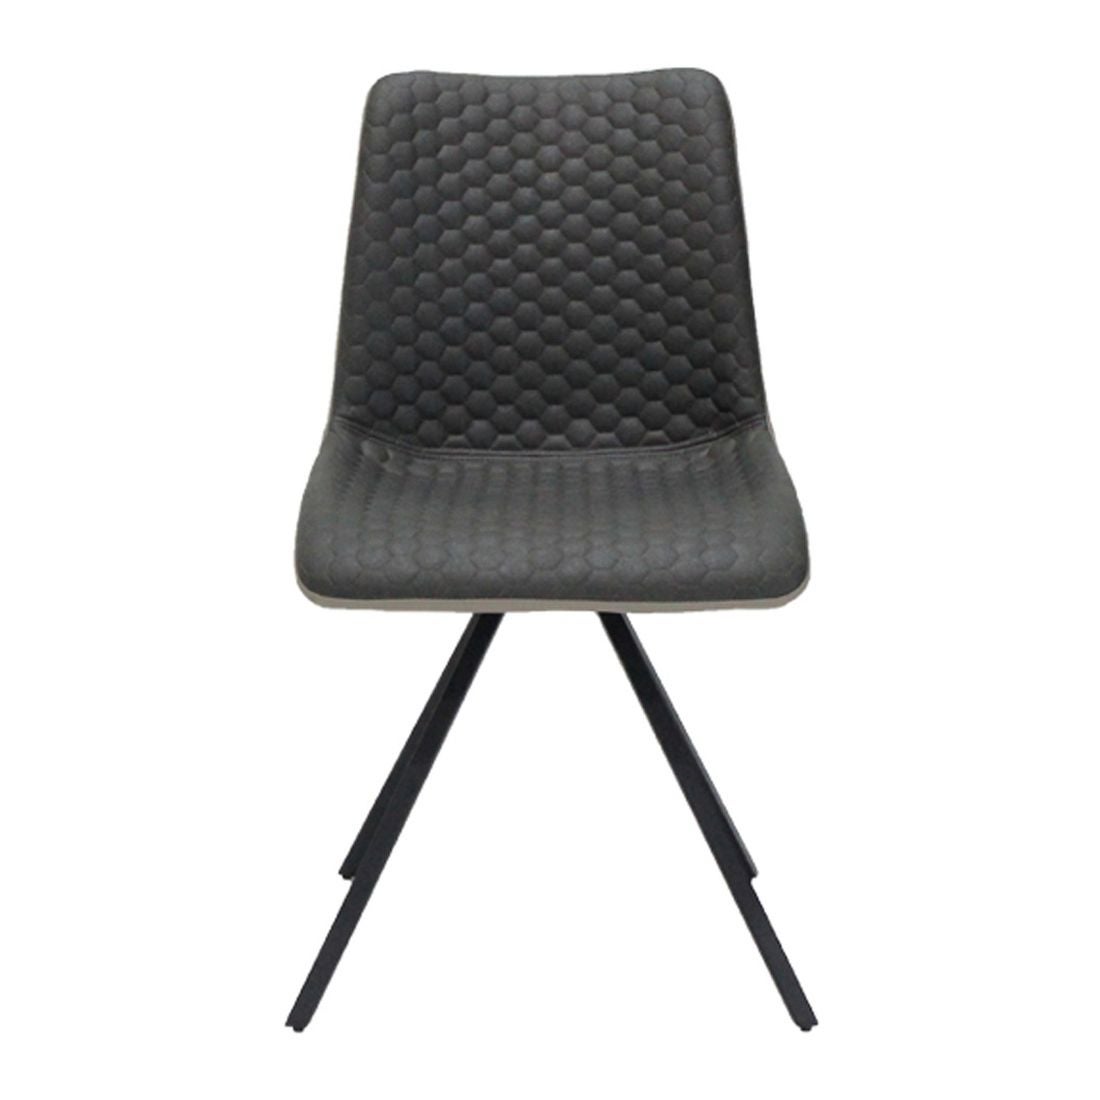 เก้าอี้ทานอาหาร เก้าอี้เหล็กเบาะผ้า รุ่น Yinley-SB Design Square